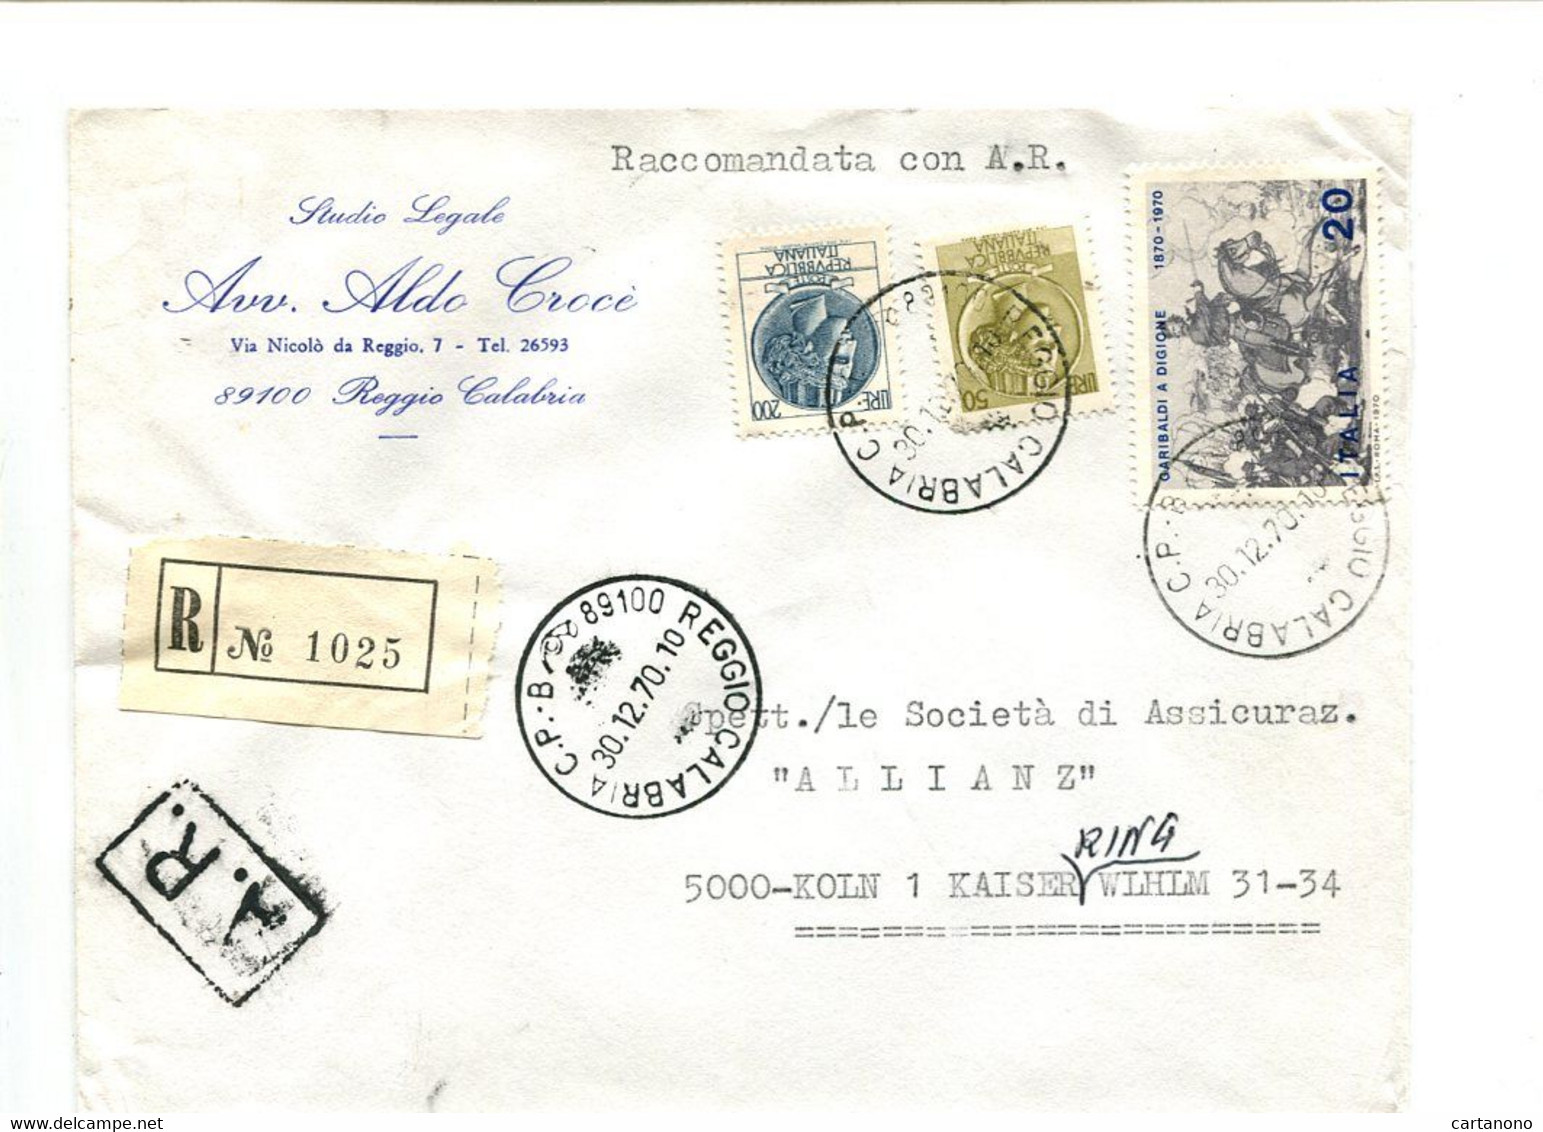 ITALIE Reggio Calabria 1970 - Affranchissement Sur Lettre Recommandée Pour L'Allemagne - Monnaie Syracusaine - Maschinenstempel (EMA)